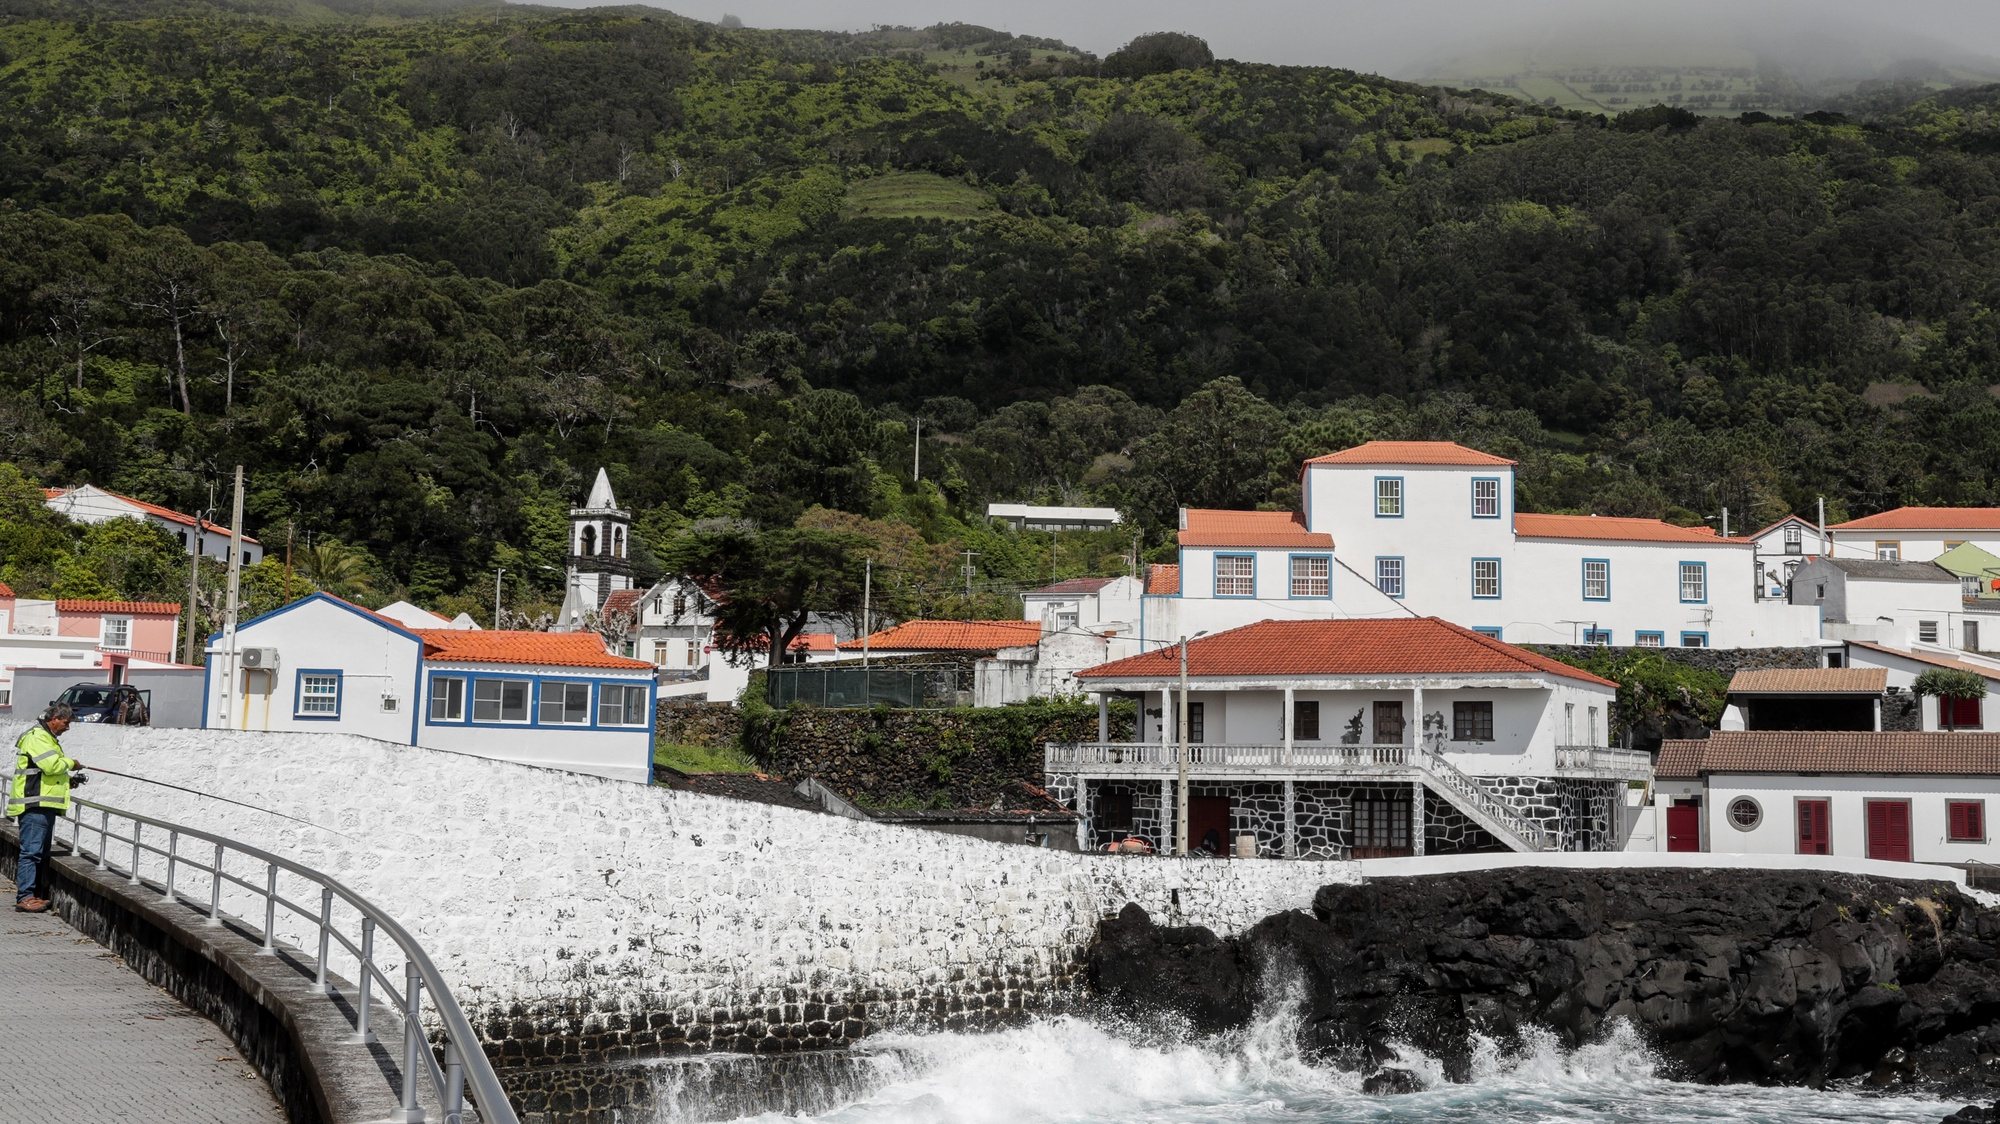 Vista geral de parte da vila de Urzelina na ilha de São Jorge nos Açores, 29 de março de 2022. TIAGO PETINGA/LUSA